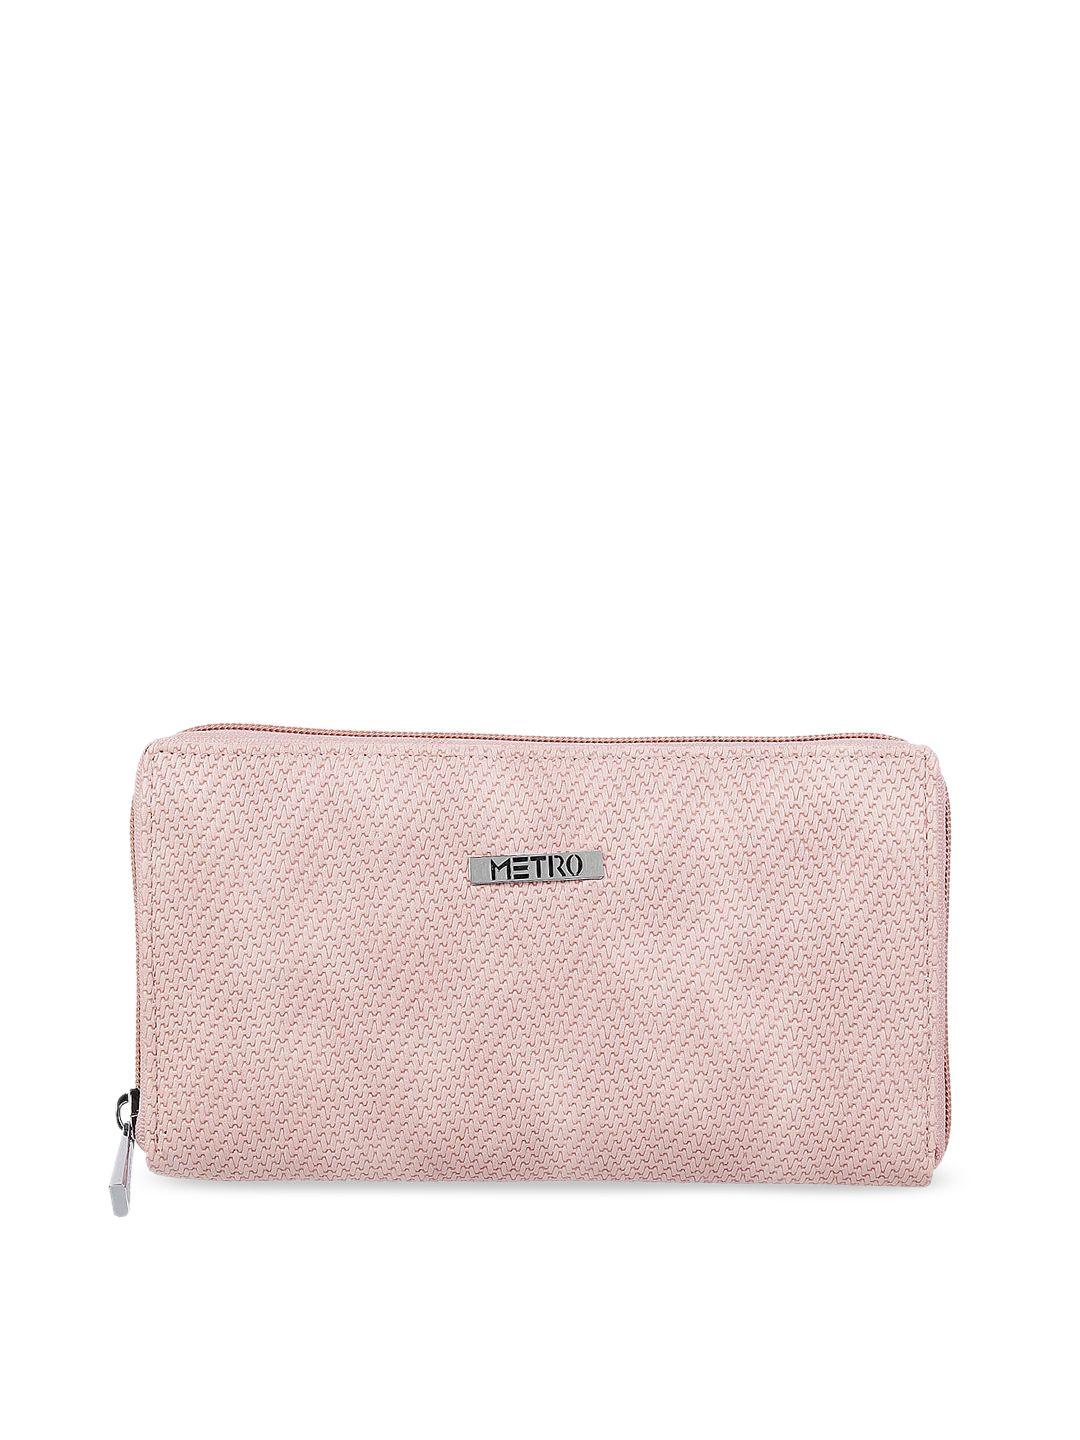 metro peach-coloured textured purse clutch